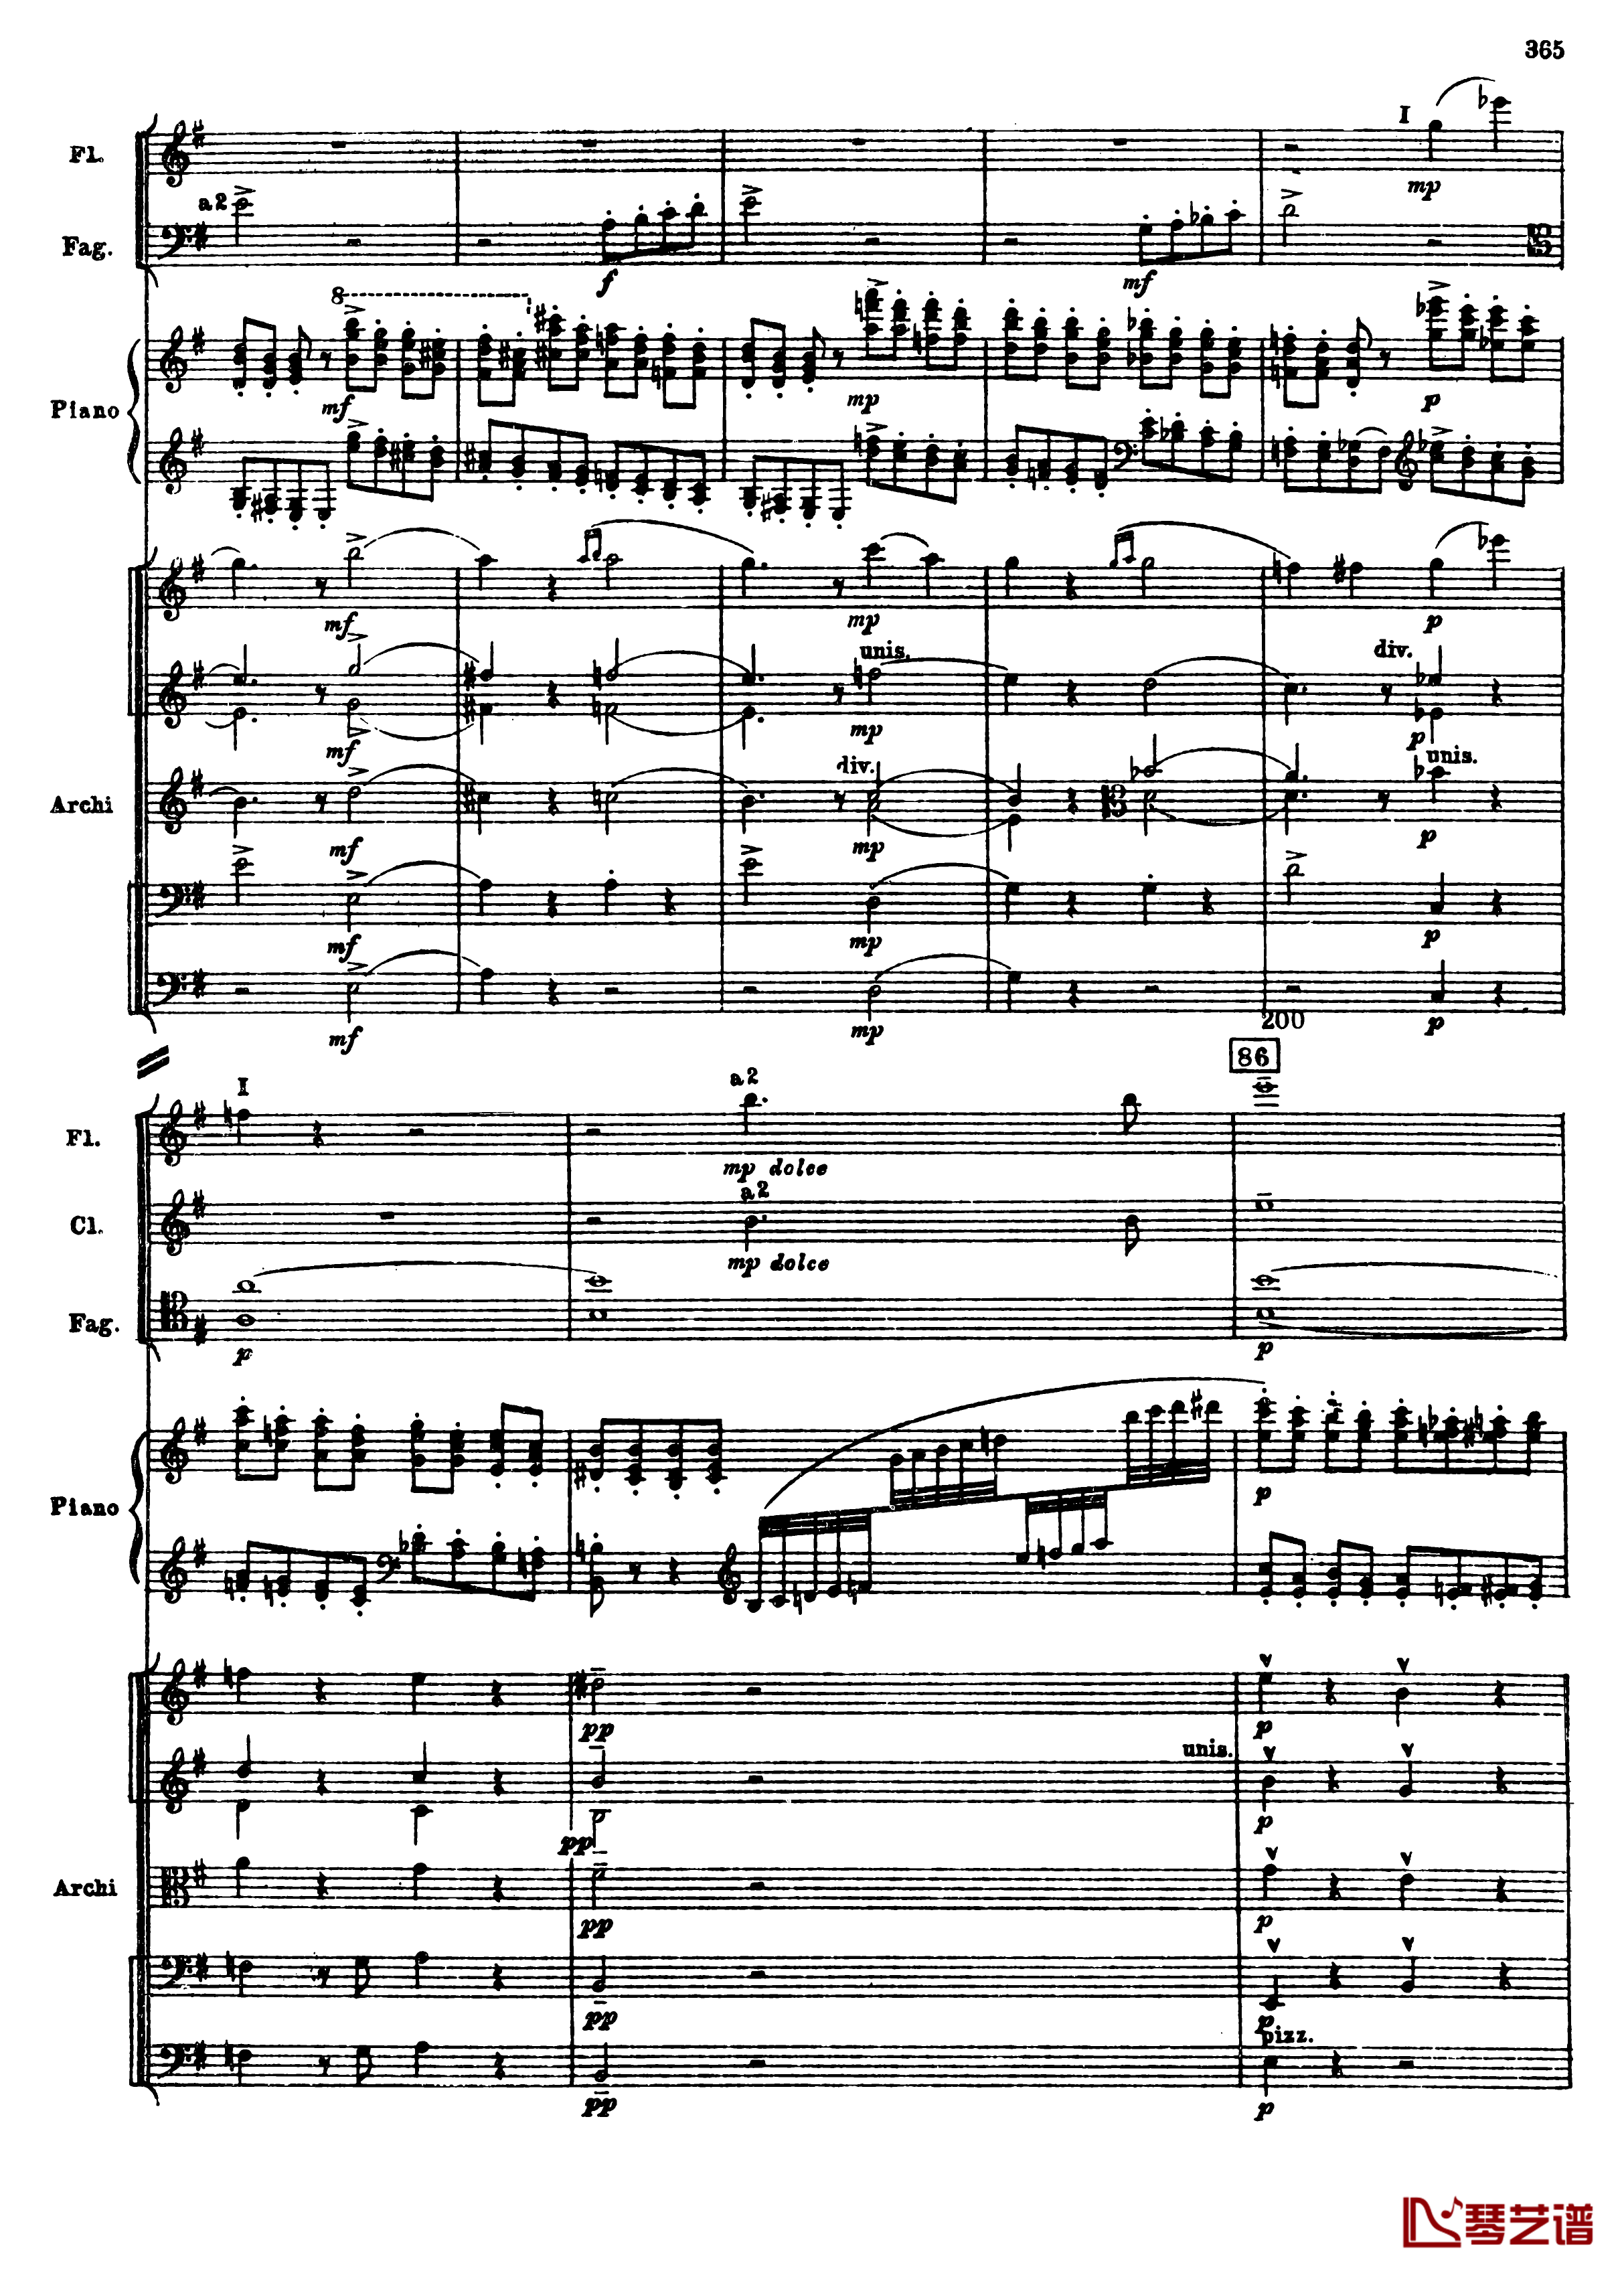 普罗科菲耶夫第三钢琴协奏曲钢琴谱-总谱-普罗科非耶夫97